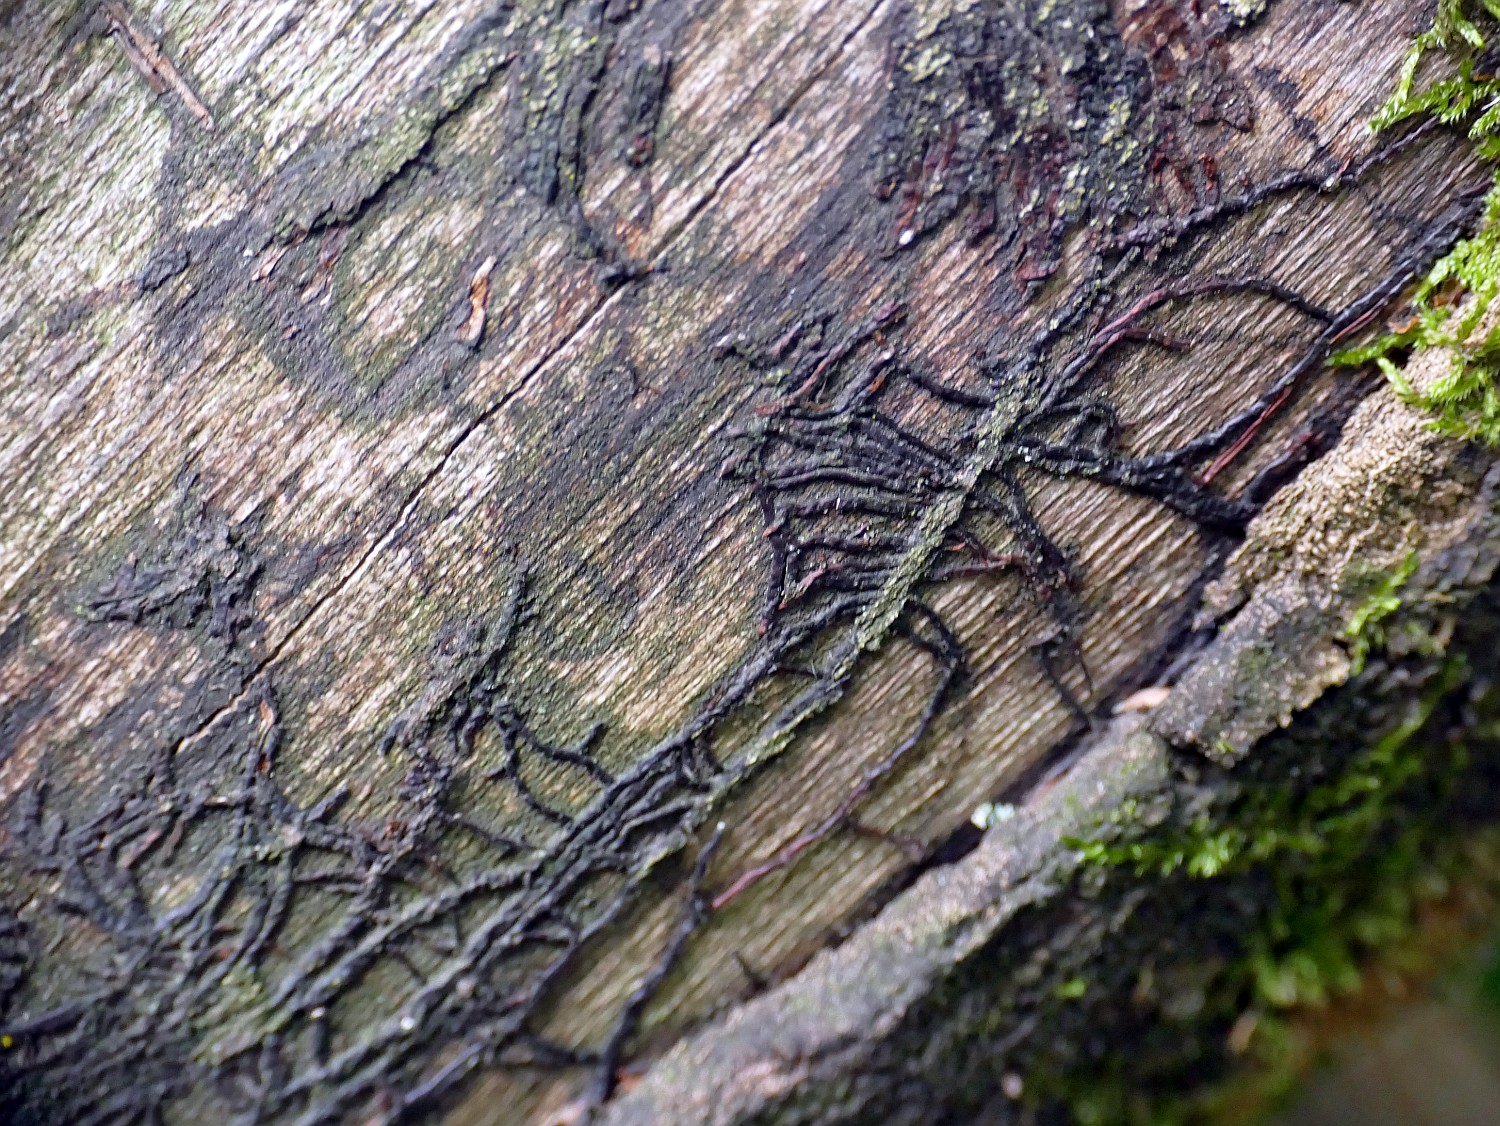 dunkle kabelartige Strukturen auf einem rindenlosen toten Baumstamm